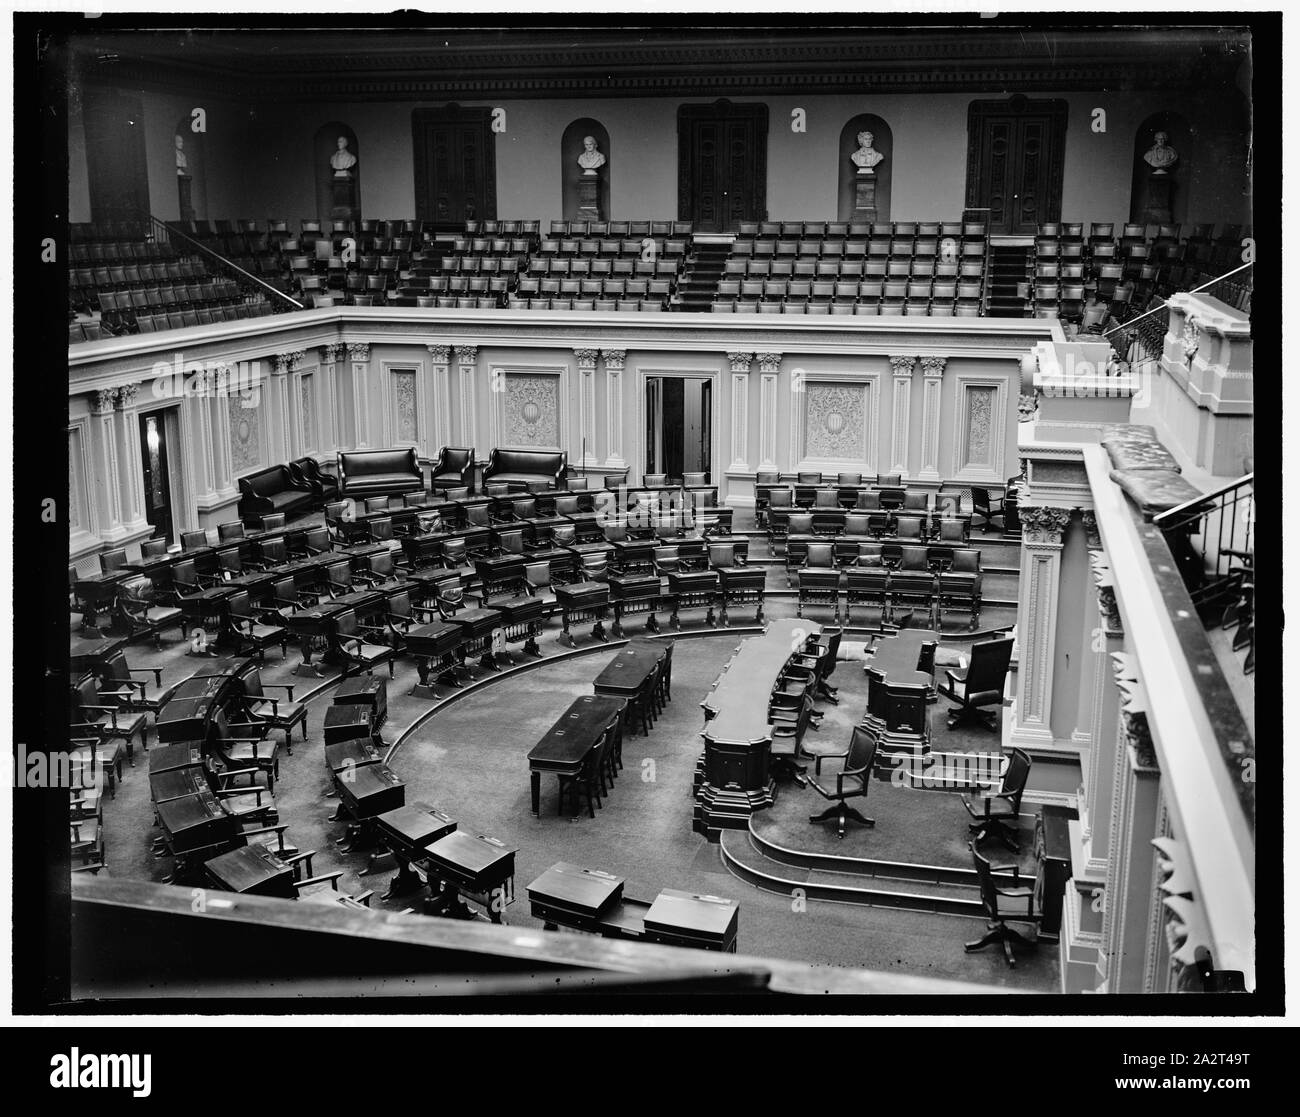 Prêt pour l'ouverture de session. Washington, D.C., 30 décembre. Nouvellement décoré de haut en bas, la salle du Sénat est prêt pour les législateurs qui ira dans la 75e session du Congrès le 5 Janvier Banque D'Images